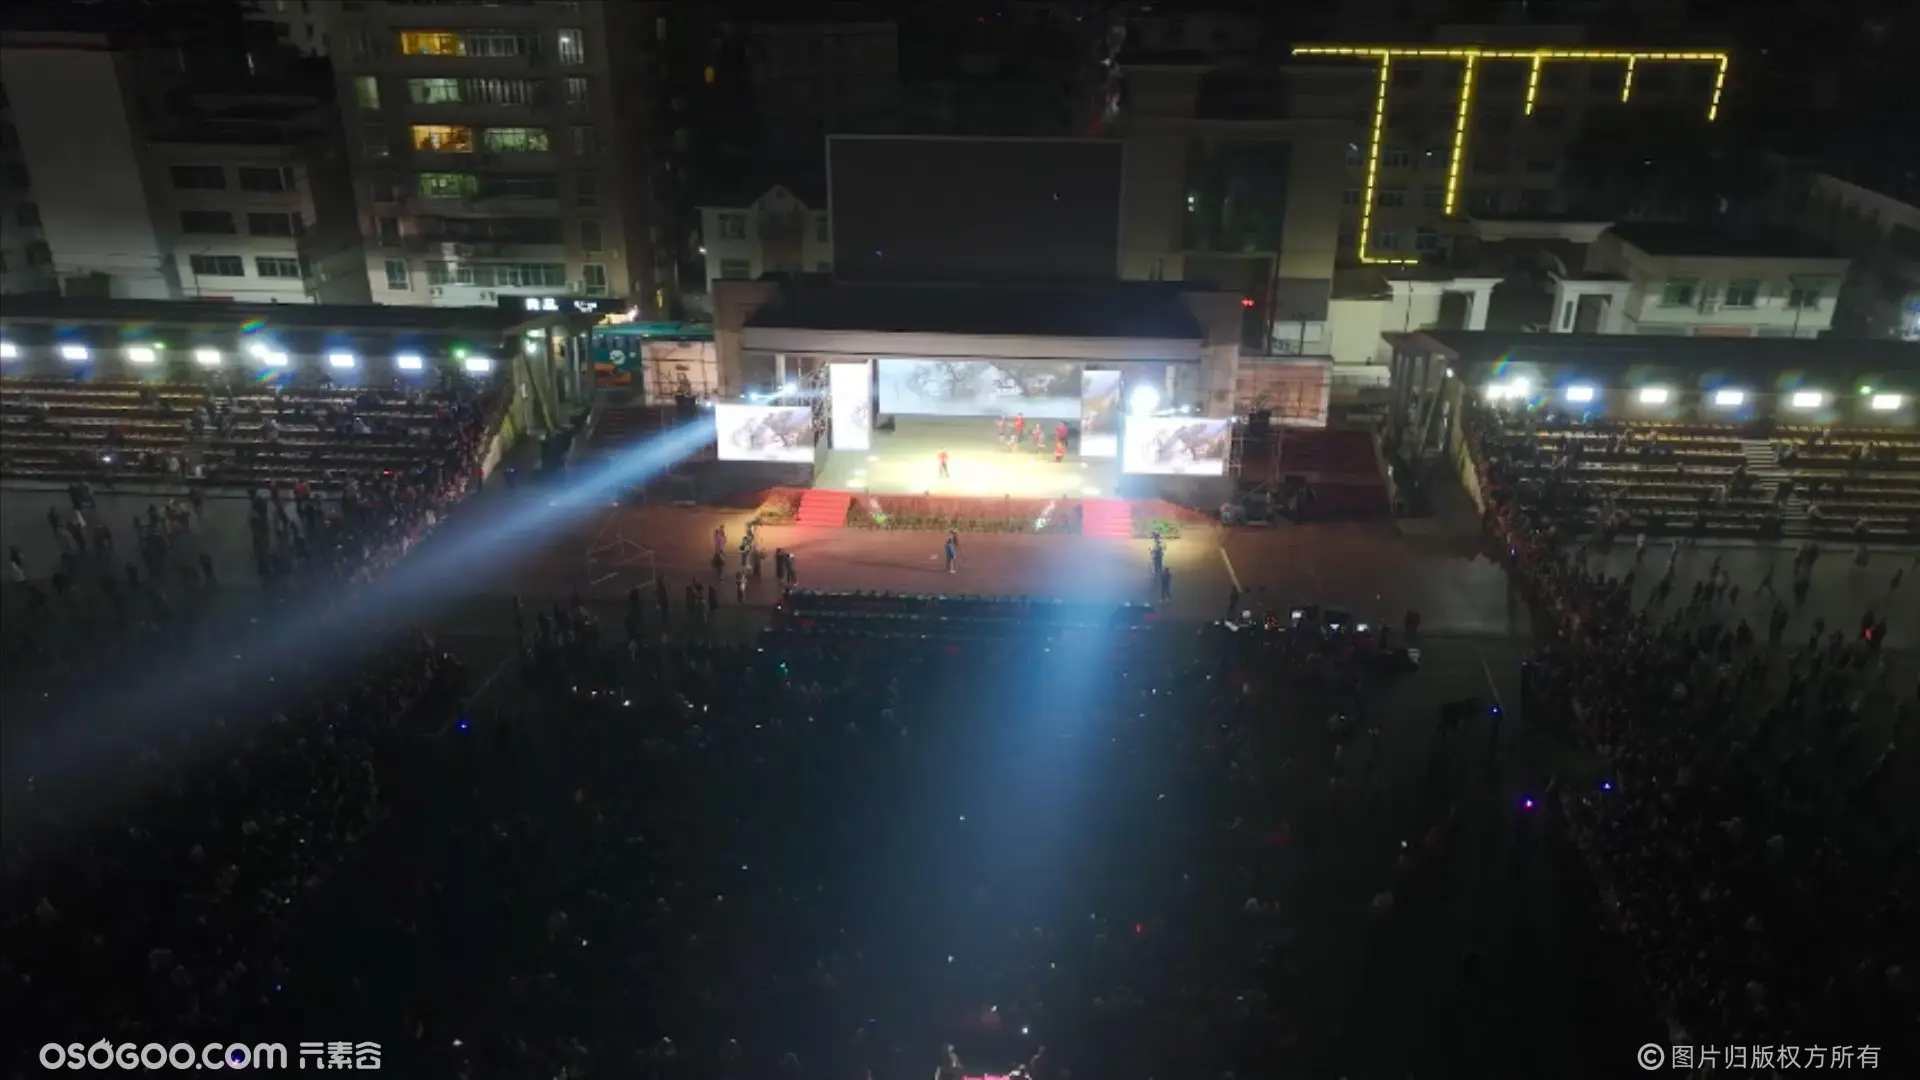 800台无人机表演在连平桃花节暨招商经贸活动演绎精彩视觉盛宴